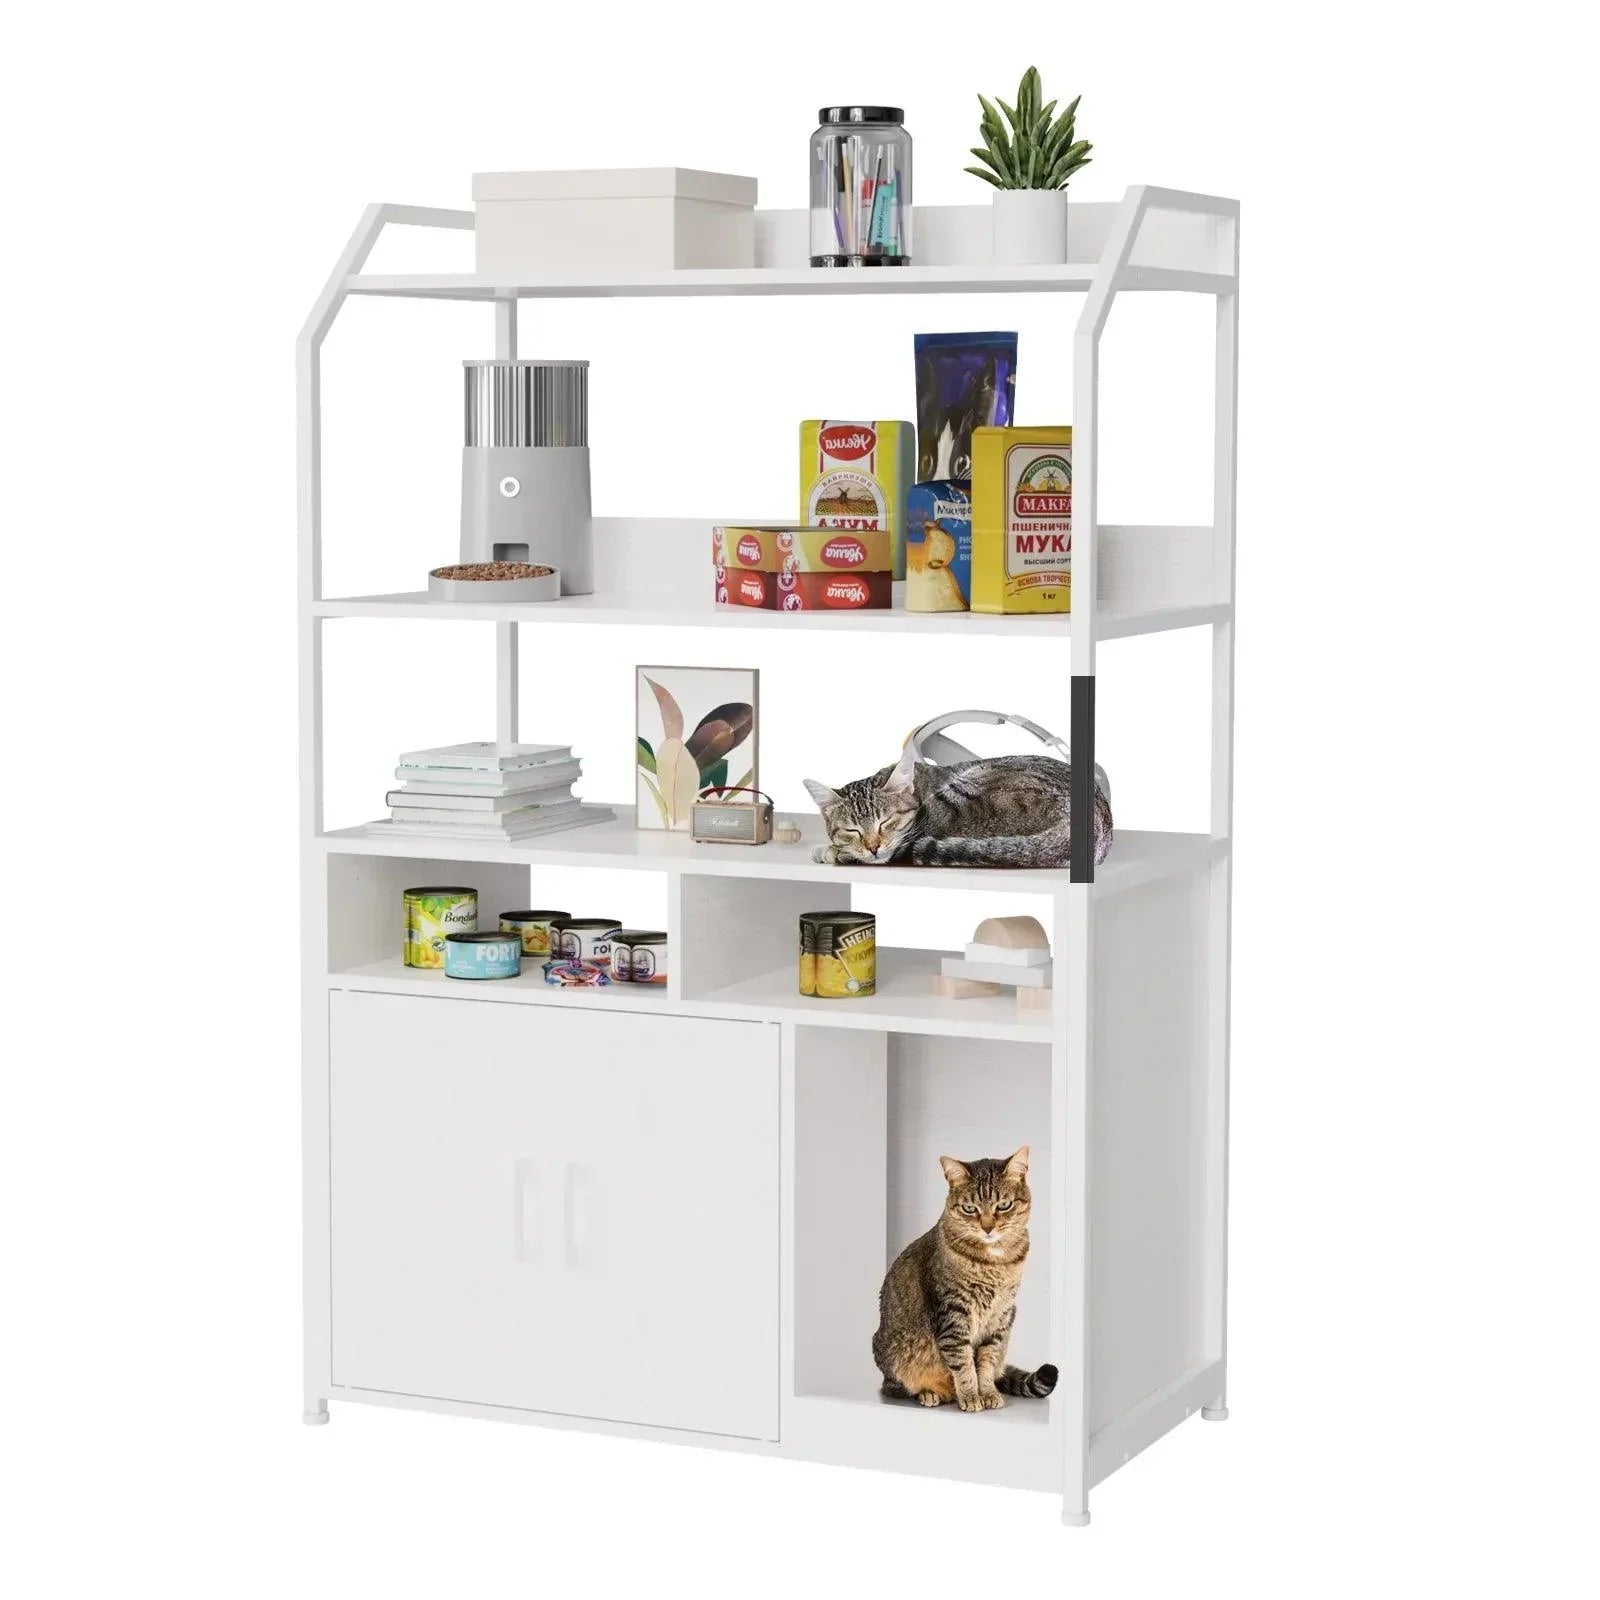 RaDEWAY Wooden Hidden Cat Litter Box with Shelf and Scratch